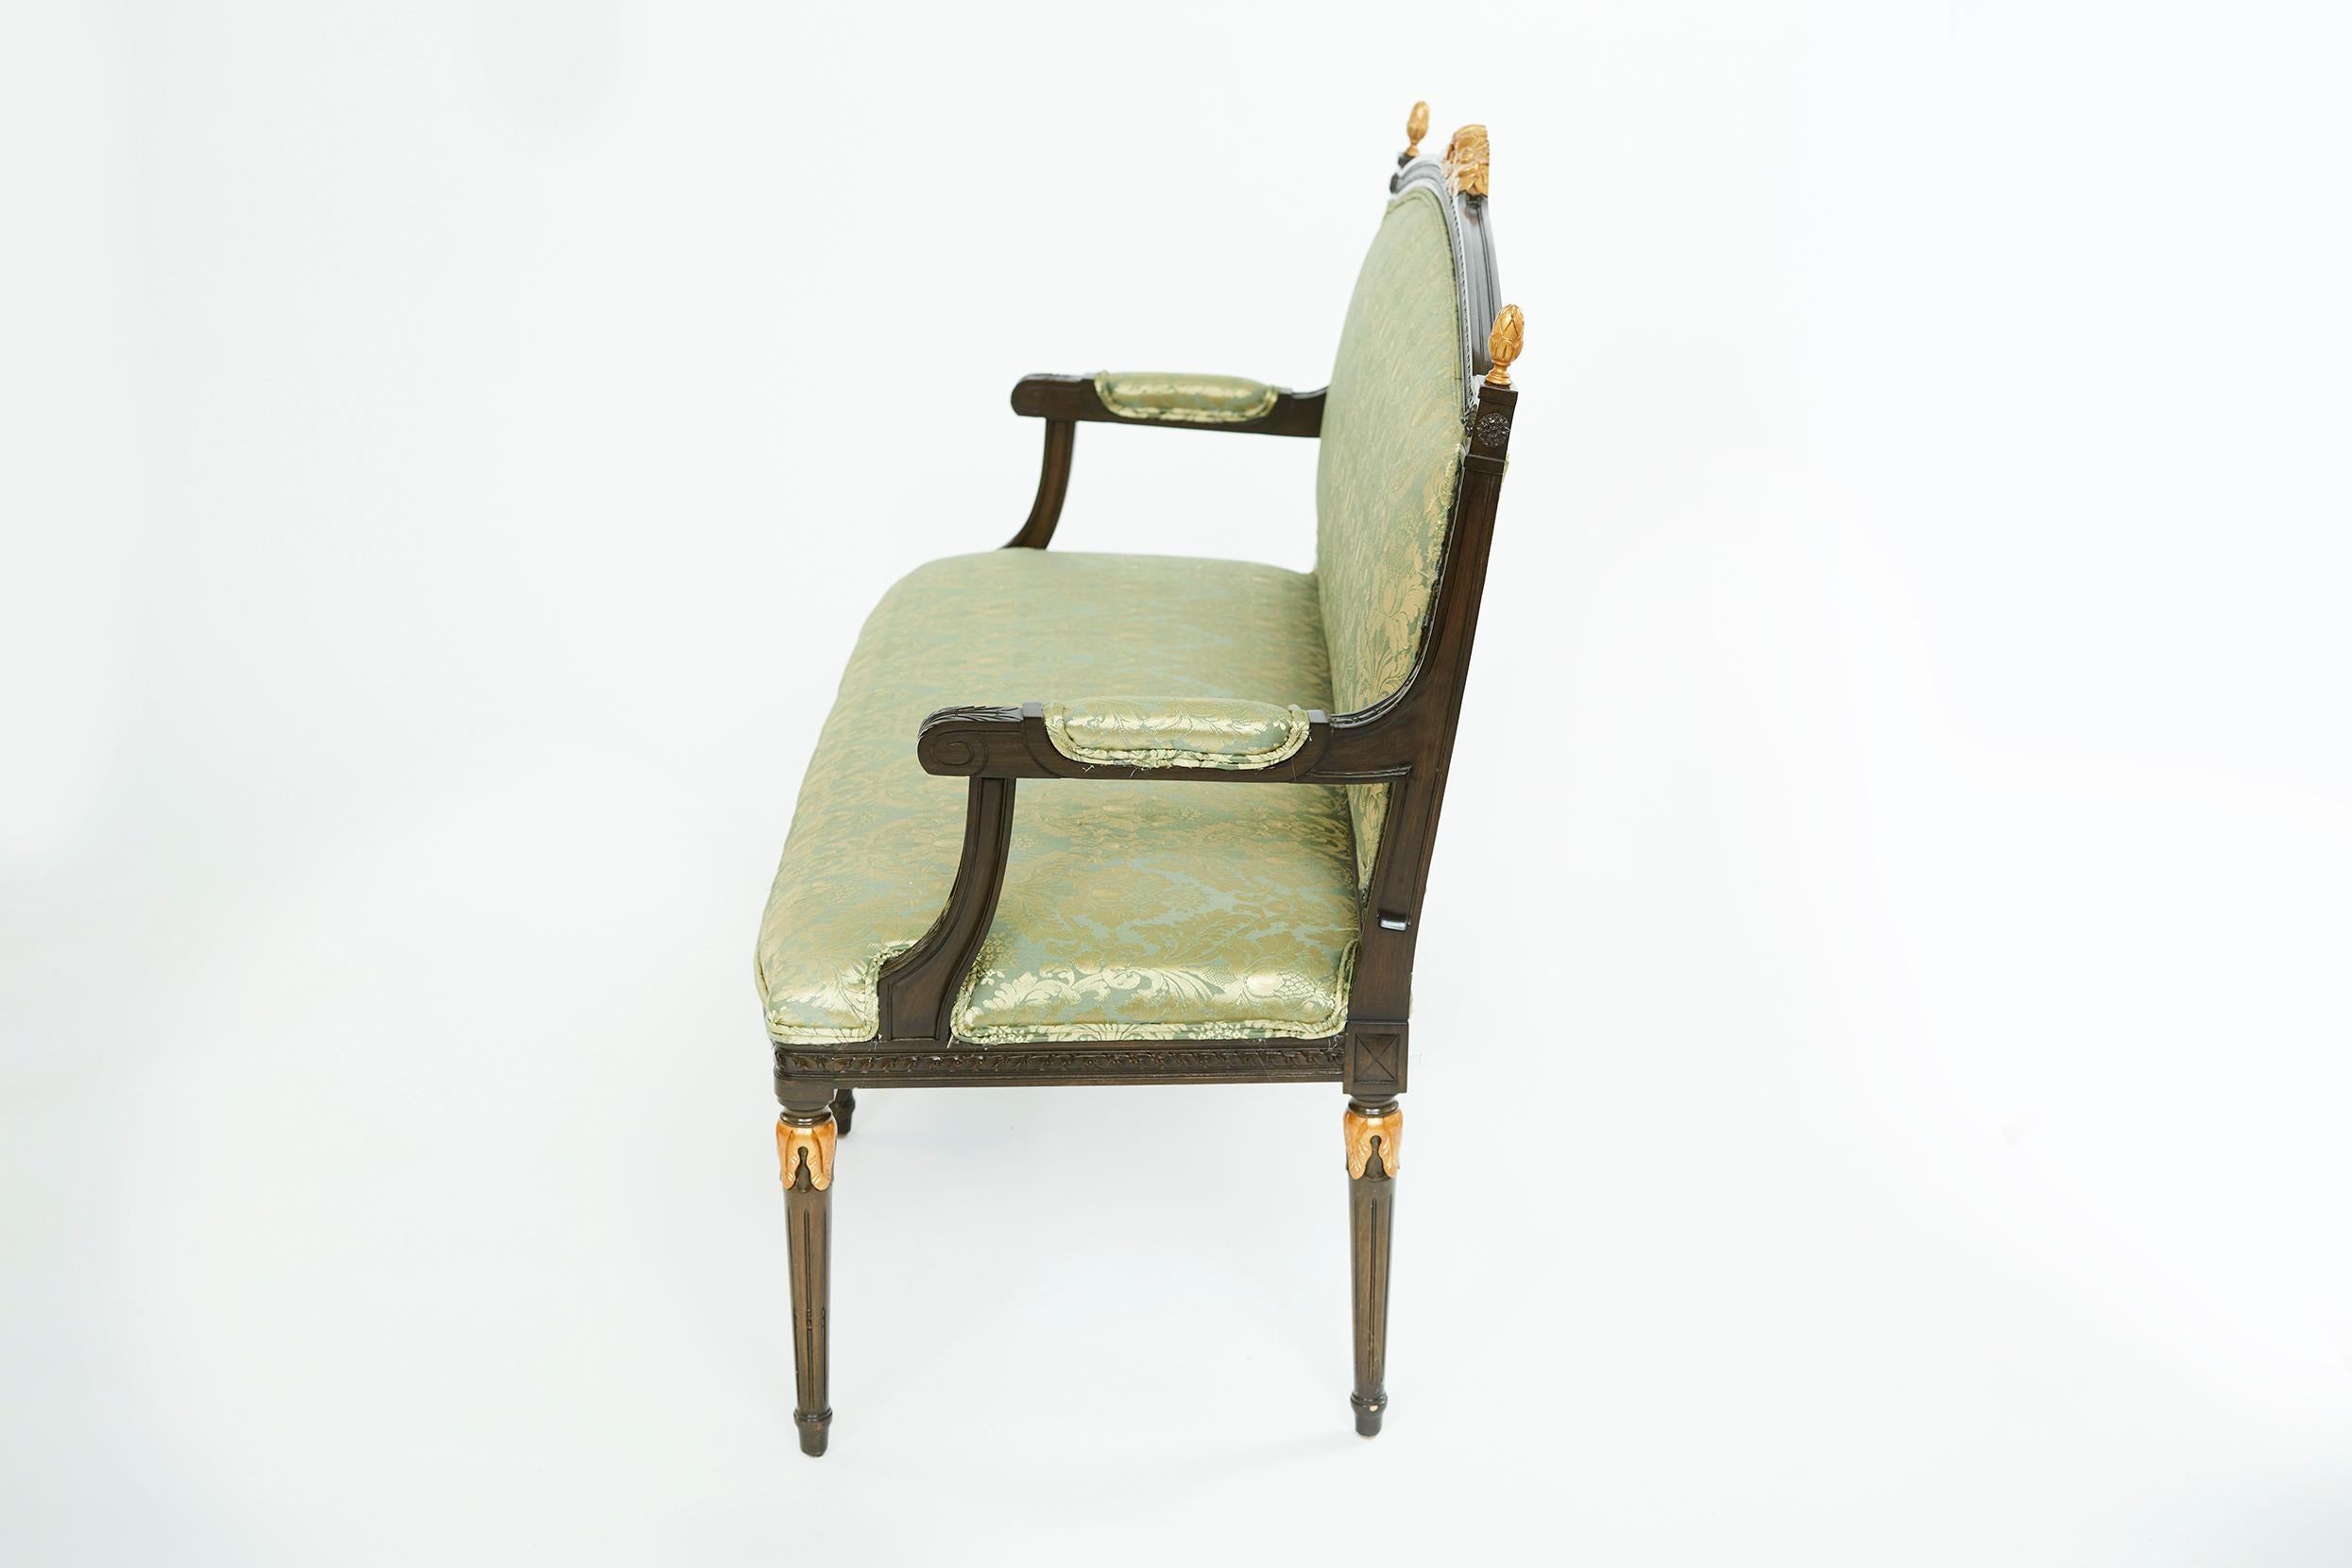 Canapé de style Louis XVI datant de la fin du 19e siècle, en bois peint et doré, avec siège rembourré en damas de soie mélangée verte. Le canapé est en excellent état d'ancienneté. Très robuste et le rembourrage est très impeccable. Le canapé mesure